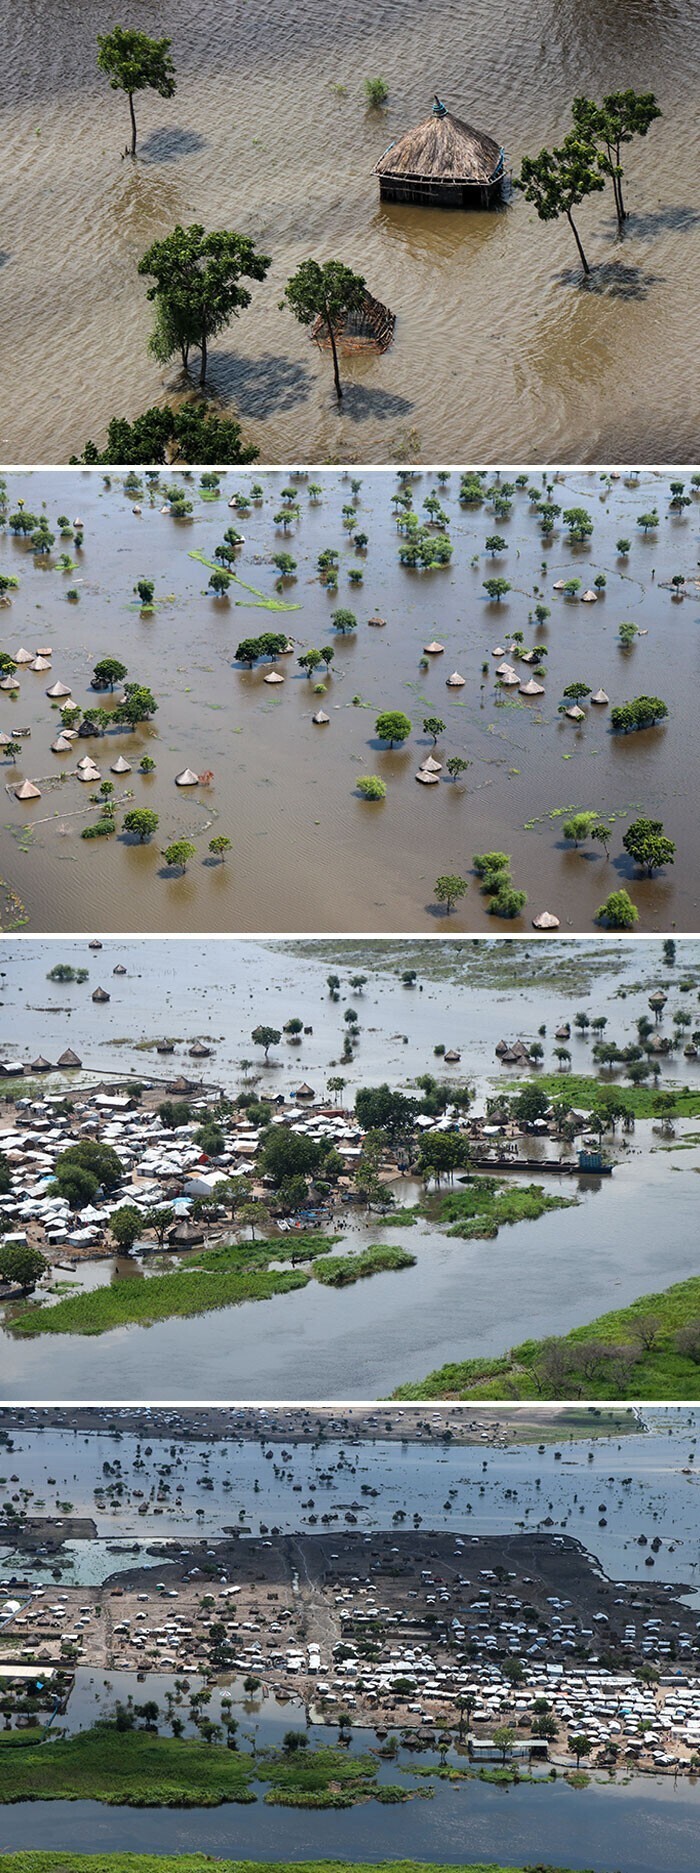 27. Самые сильные наводнения за 60 лет в Южном Судане. Катастрофические наводнения вынудили почти 750 тысяч человек покинуть свои дома